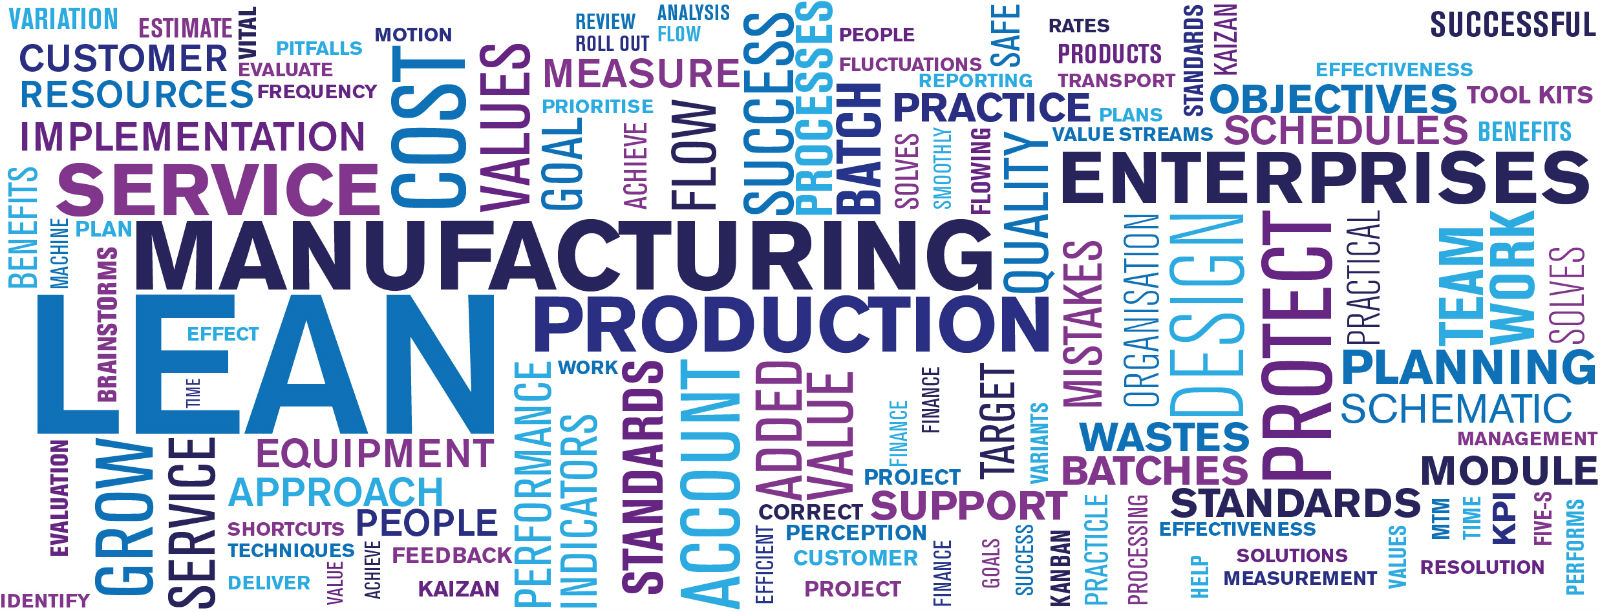 Lean, mfg,production, enterprises